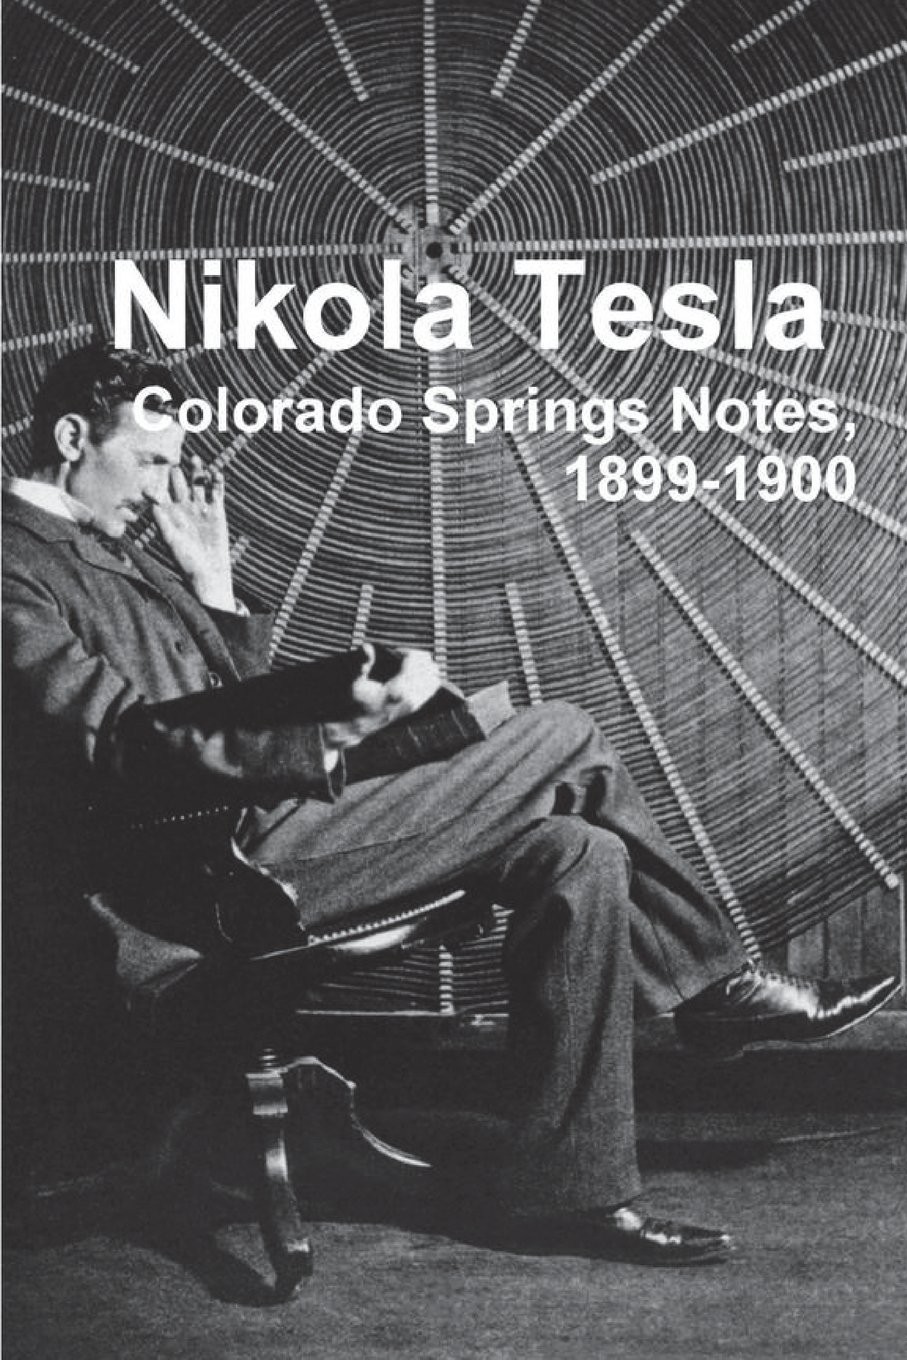 Nikola Tesla Colorado Springs Notes 1899-1900